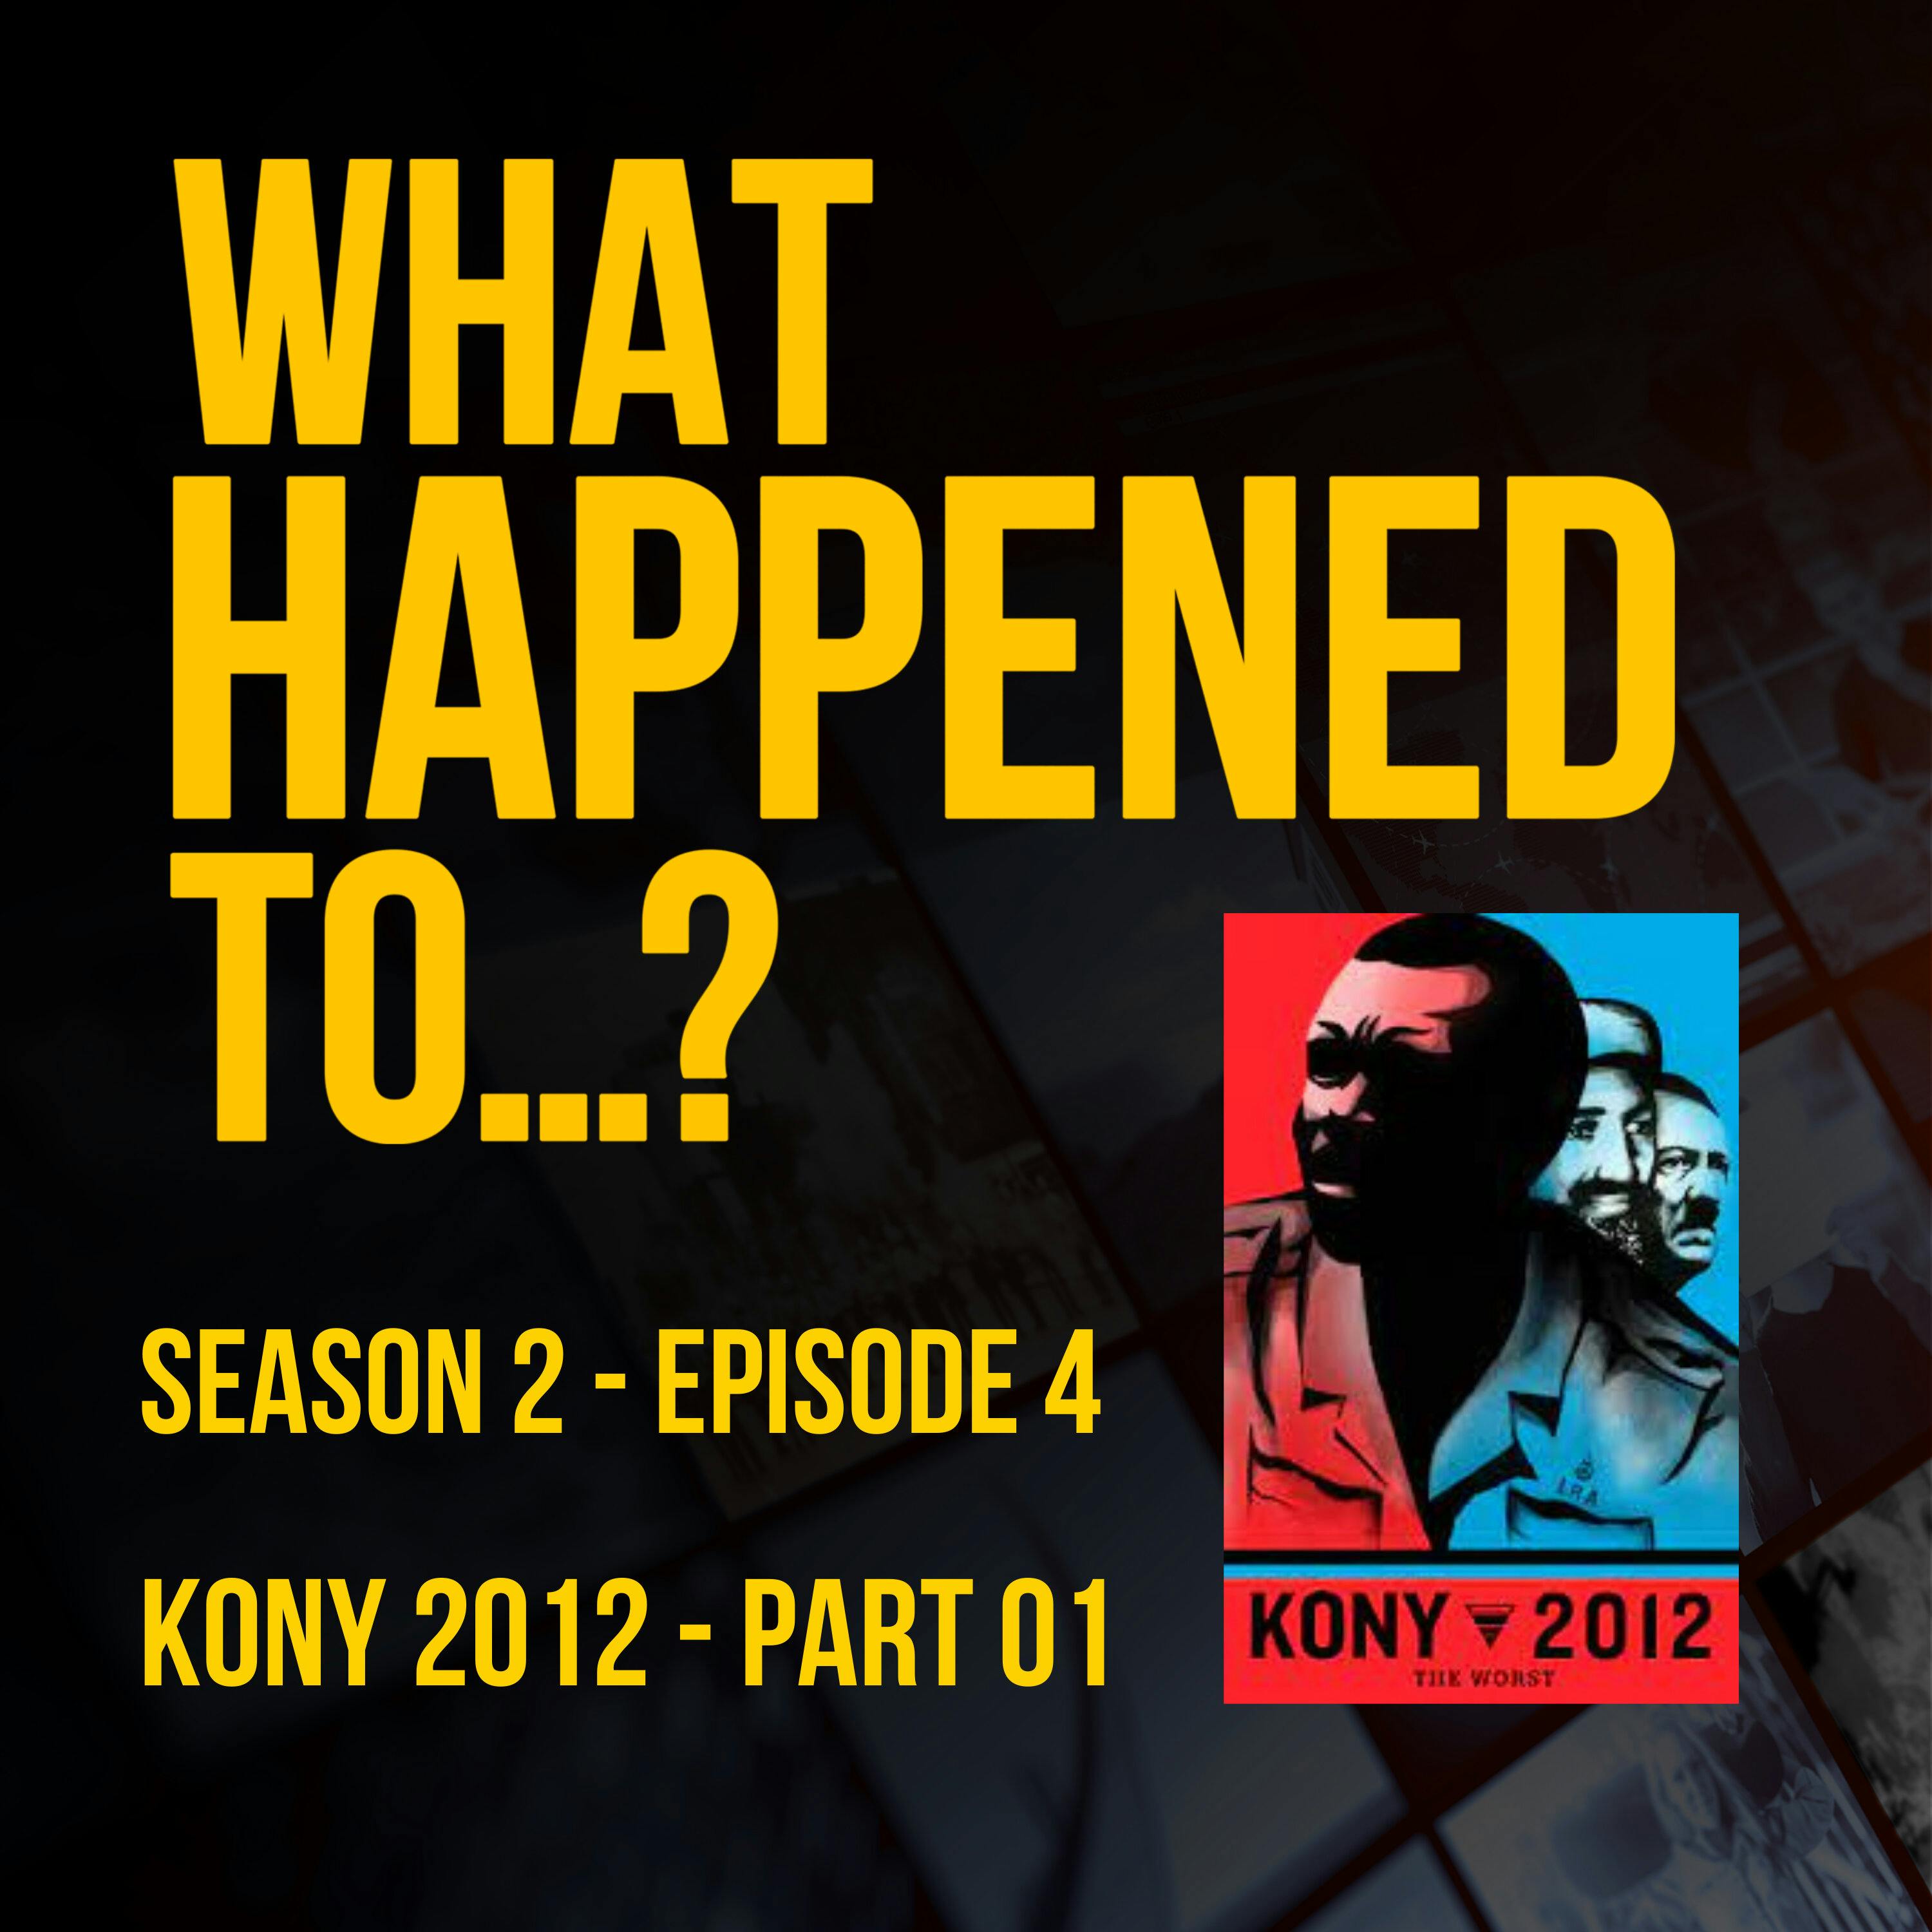 Kony 2012 - Part 1